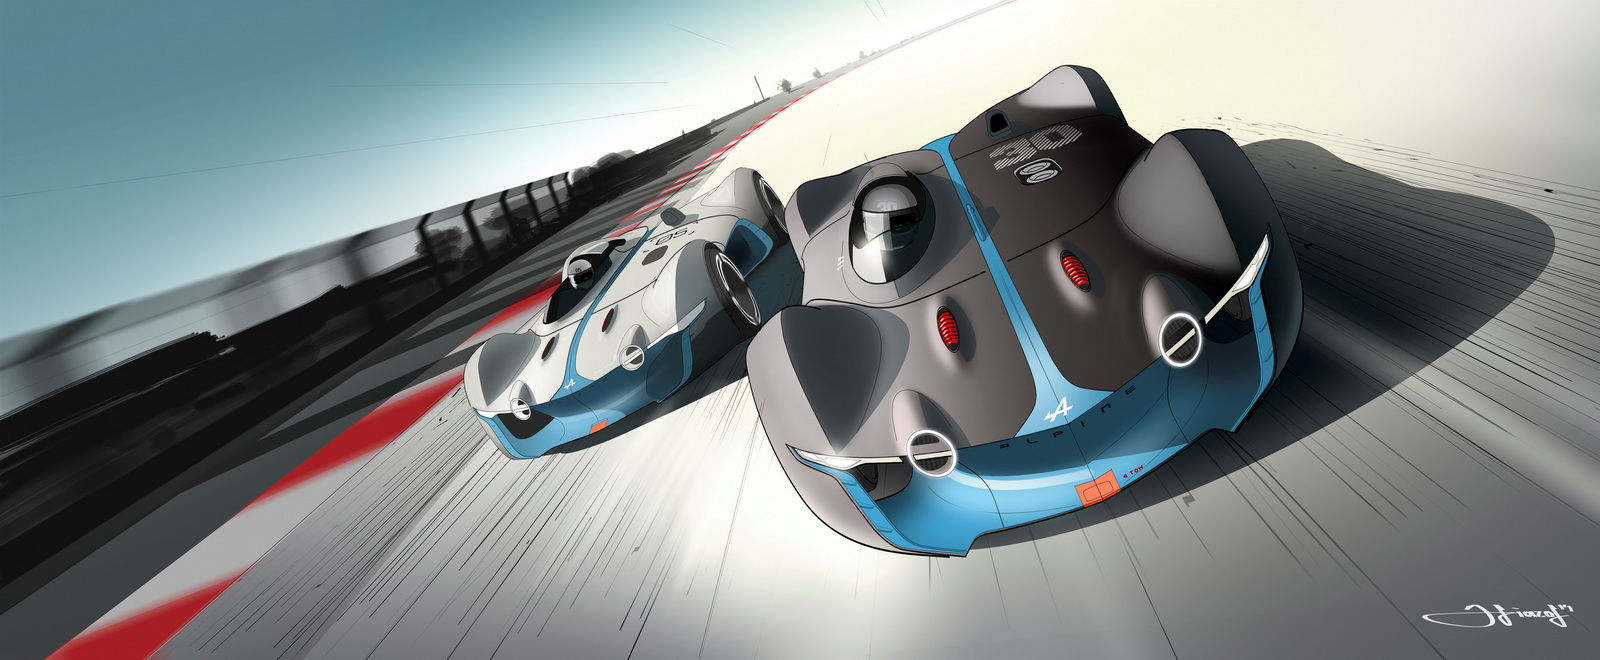 Alpine Vision Gran Turismo (2015) - Design Sketch by Victor Sfiazof